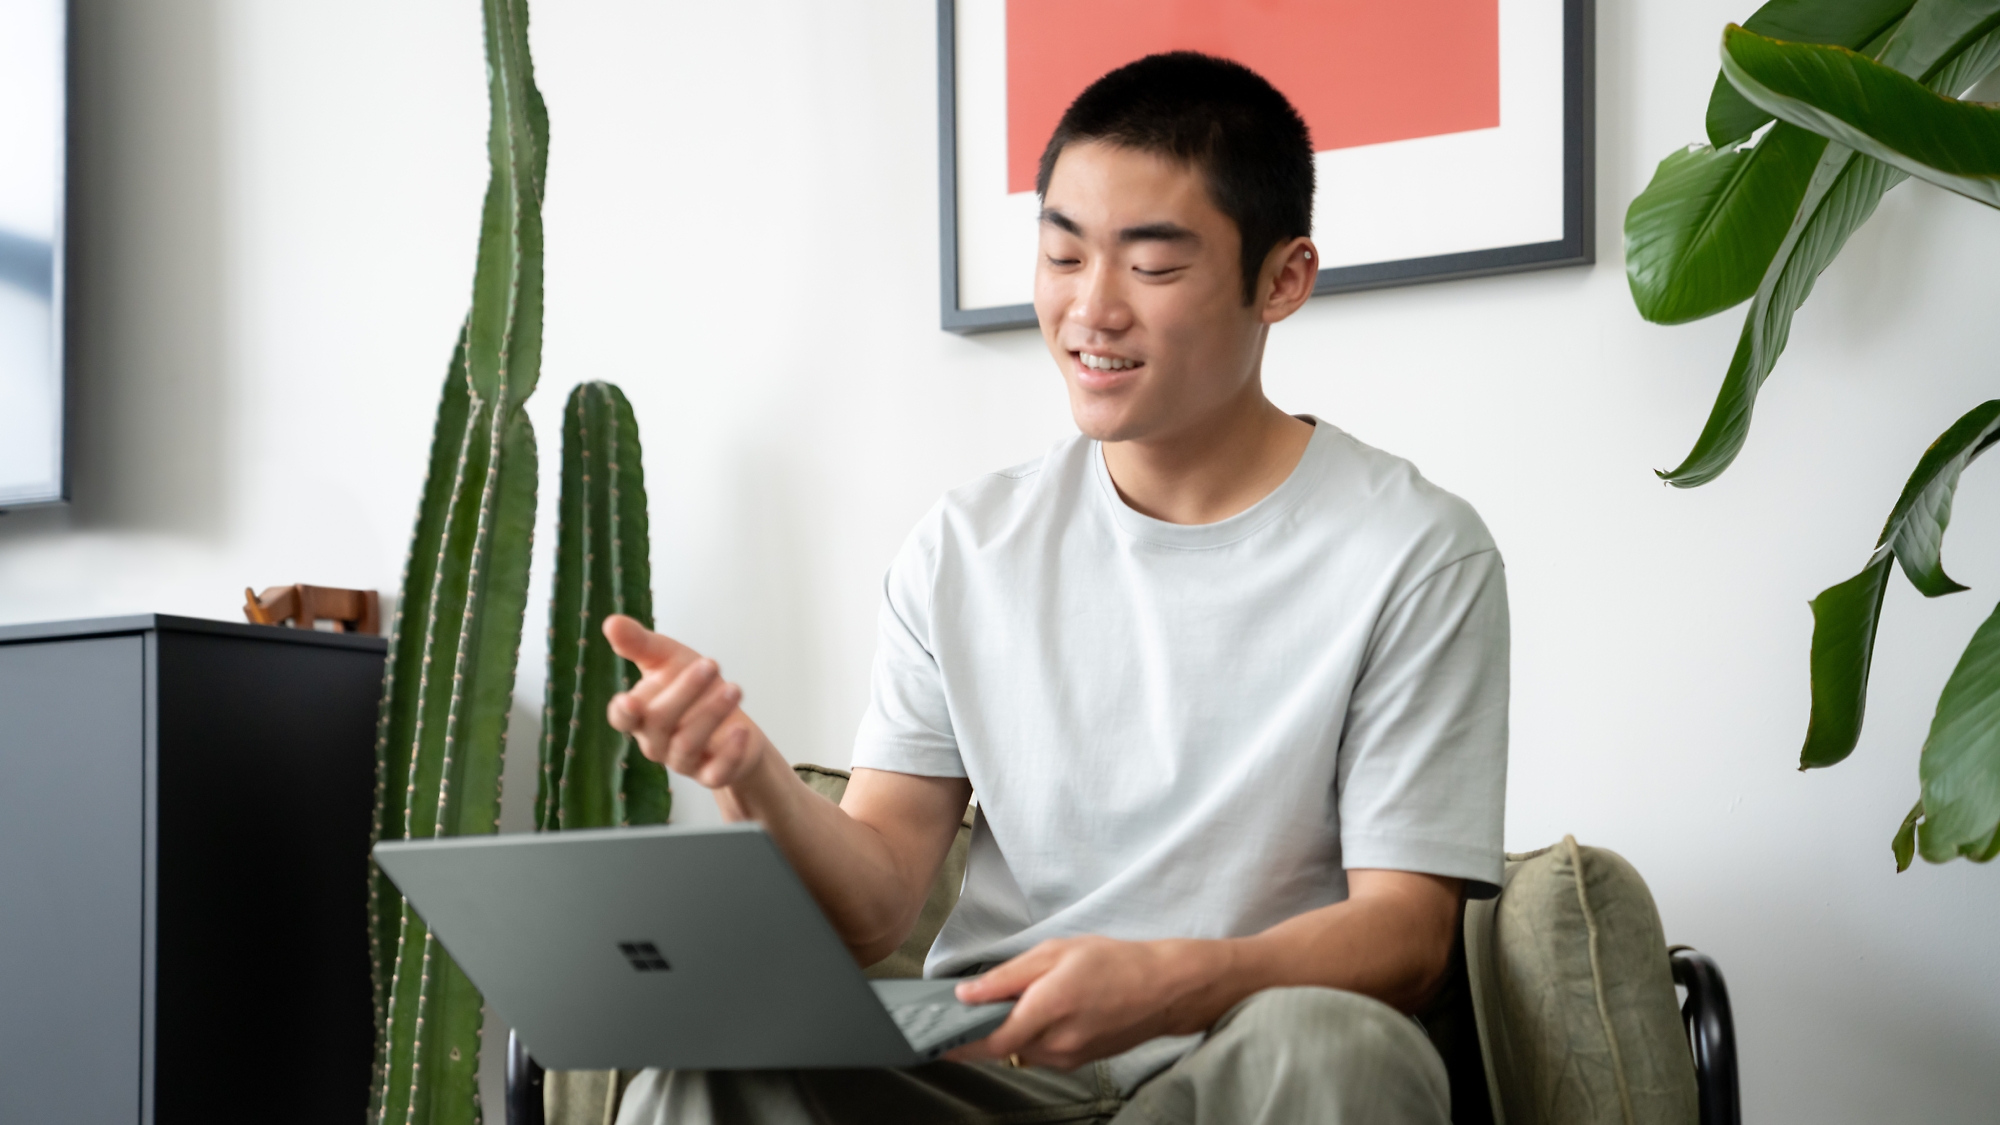 Giovane uomo felice che usa un portatile in una stanza moderna con piante di casa.